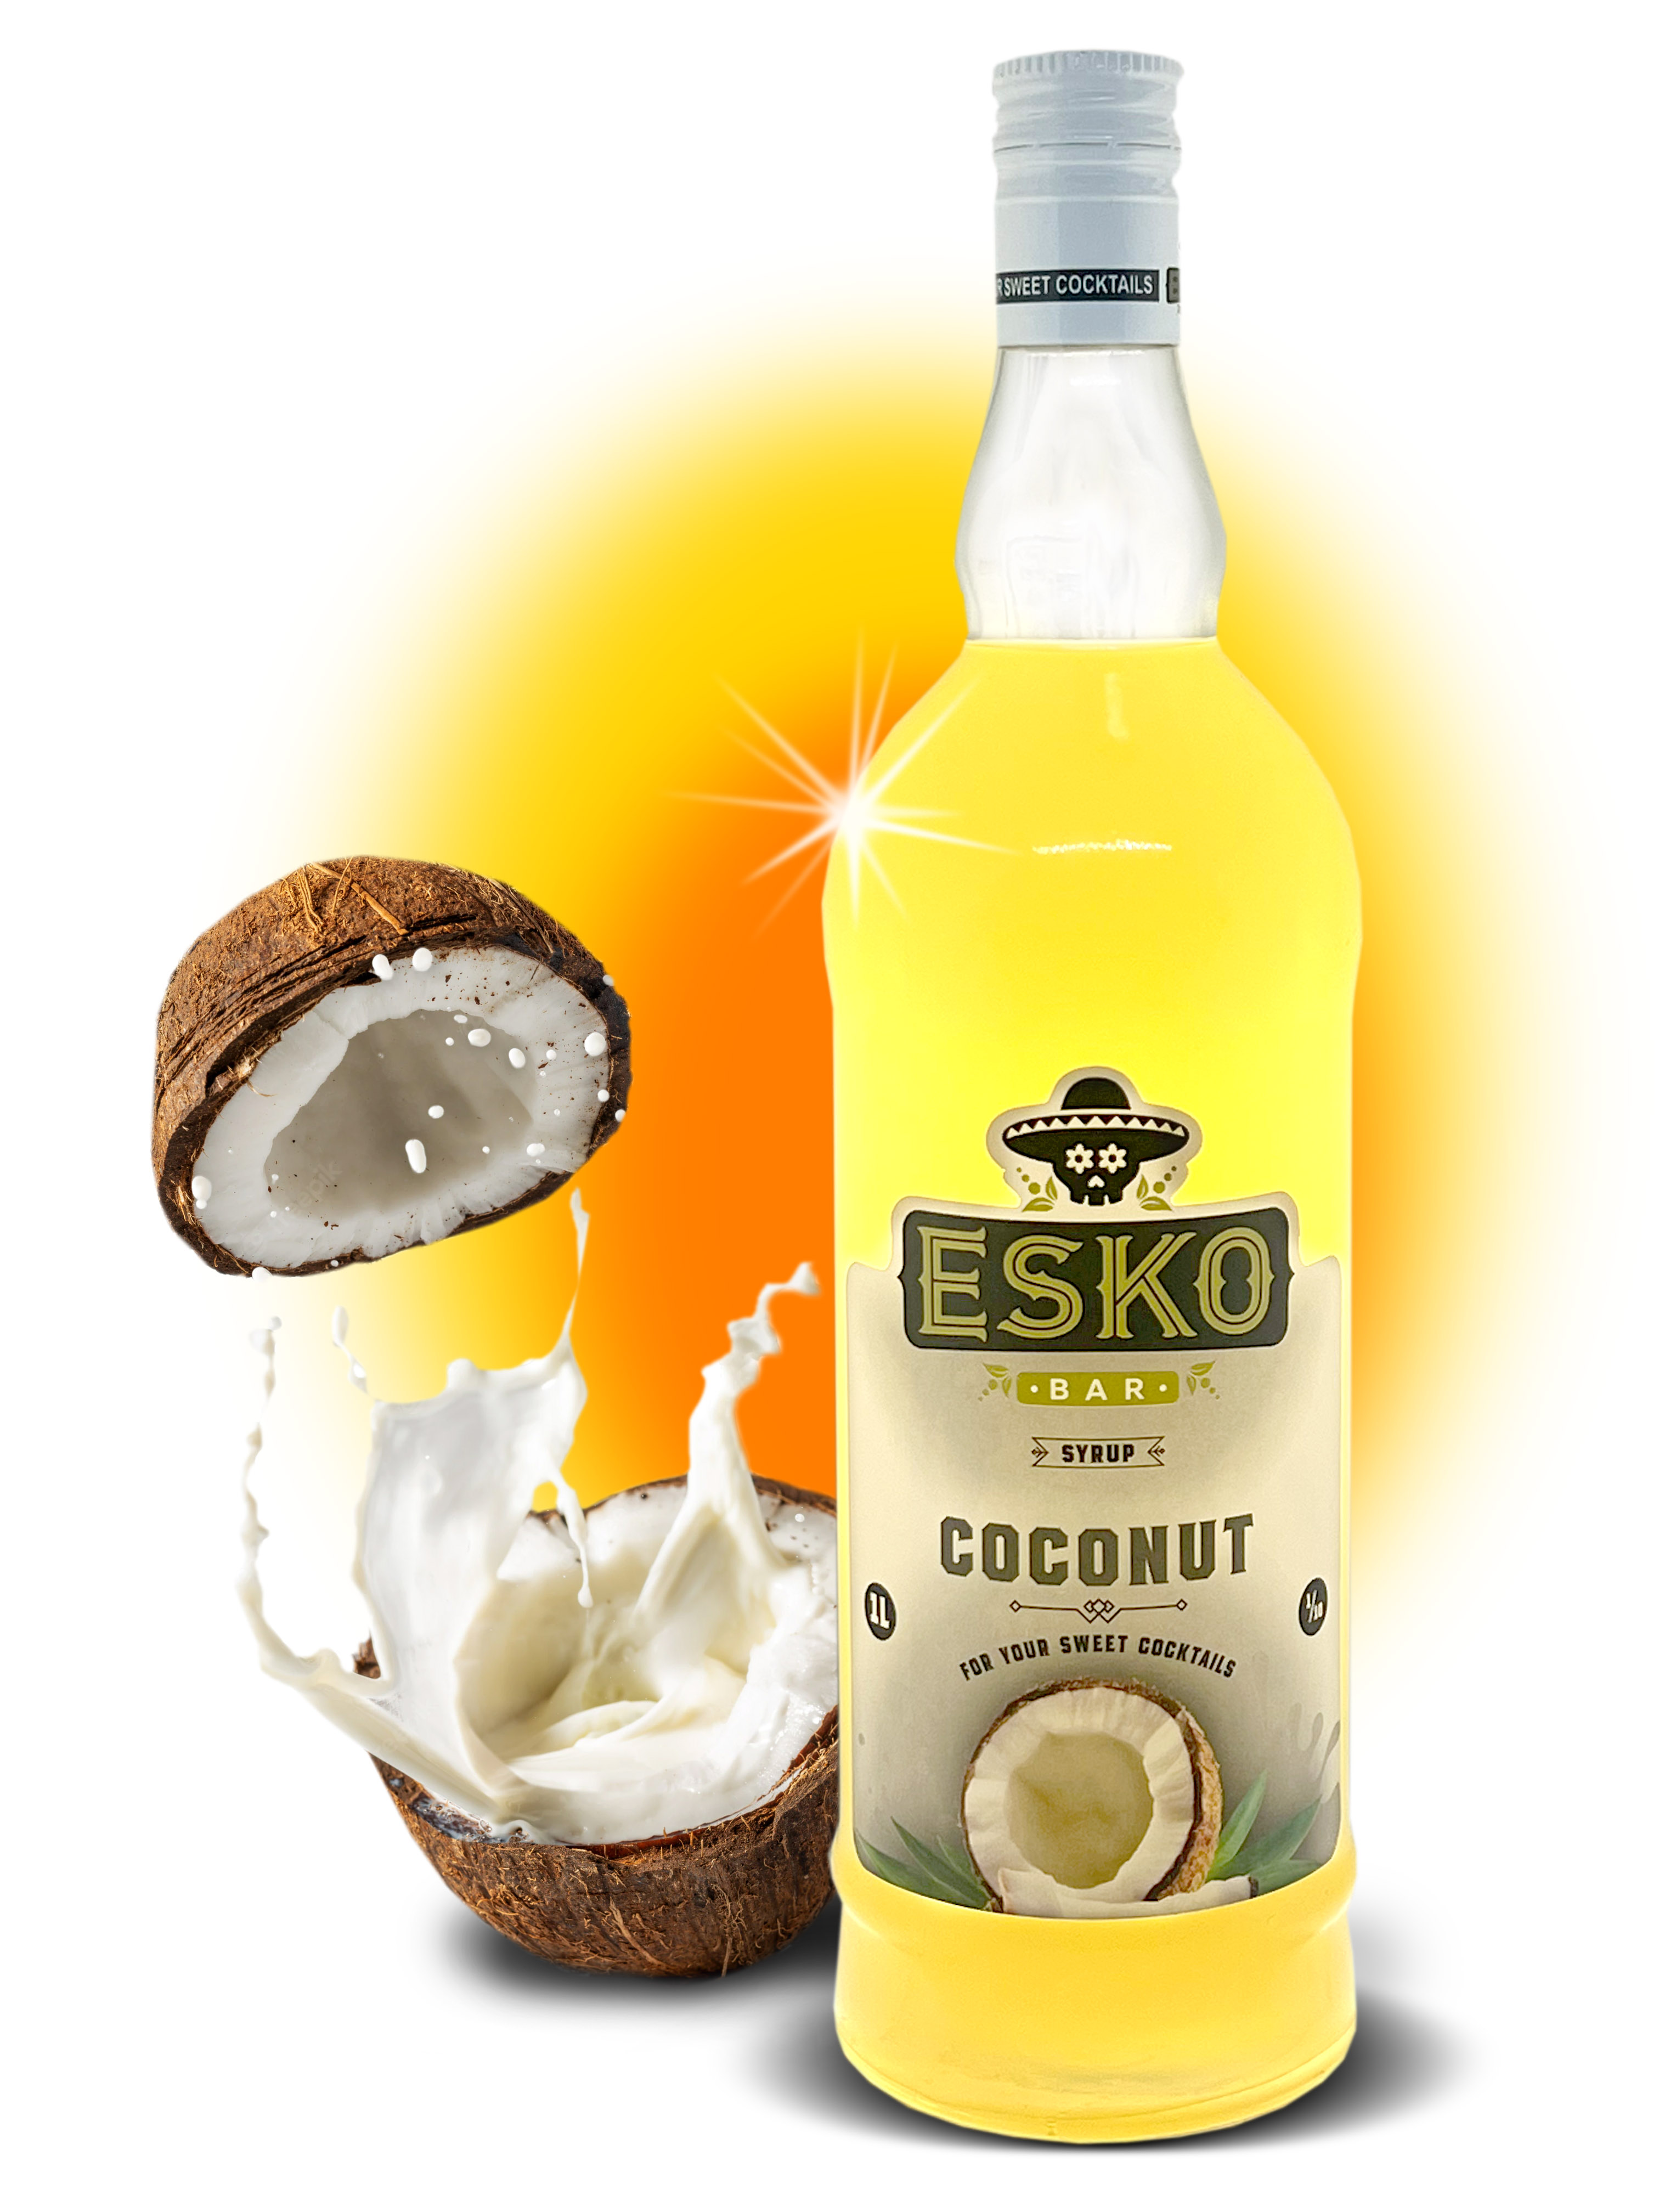 Сироп Esko Bar Coconut (1L) изображение 1